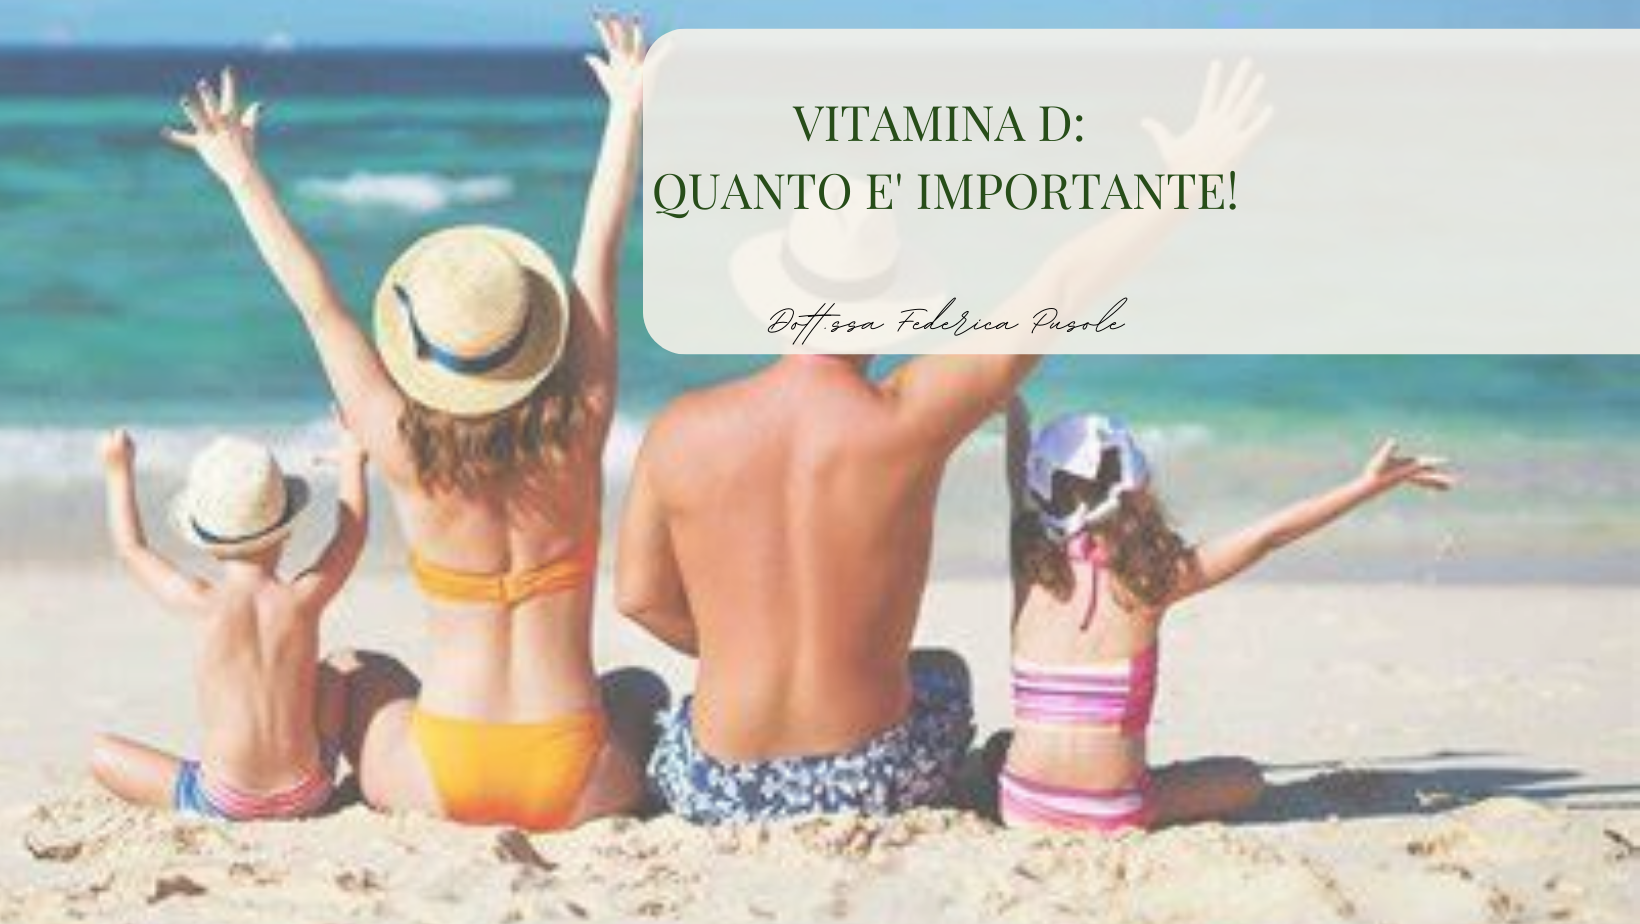 Vitamina D: quanto è importante!